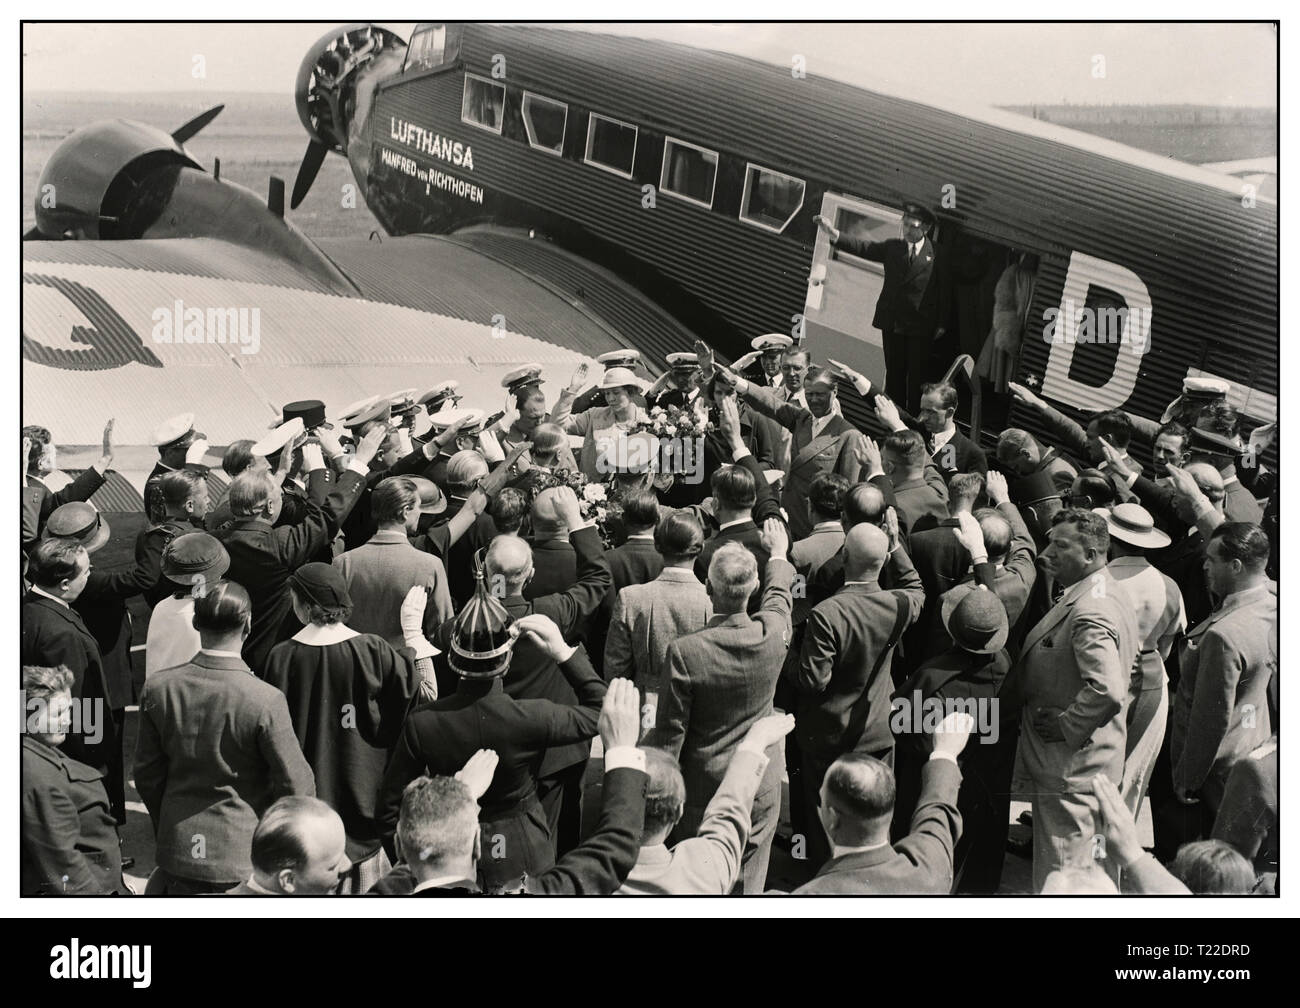 Vintage degli anni trenta del pre-guerra B&W immagine di Hermann Göring leader nazista tedesco e capo della Luftwaffe tedesca di arrivare in Ungheria 'Mátyásföldön' in un tedesco Junkers Ju 52 con "Lufthansa" insegna sulla fusoliera folla lo saluto con Heil Hitler saluta 1935 Foto Stock